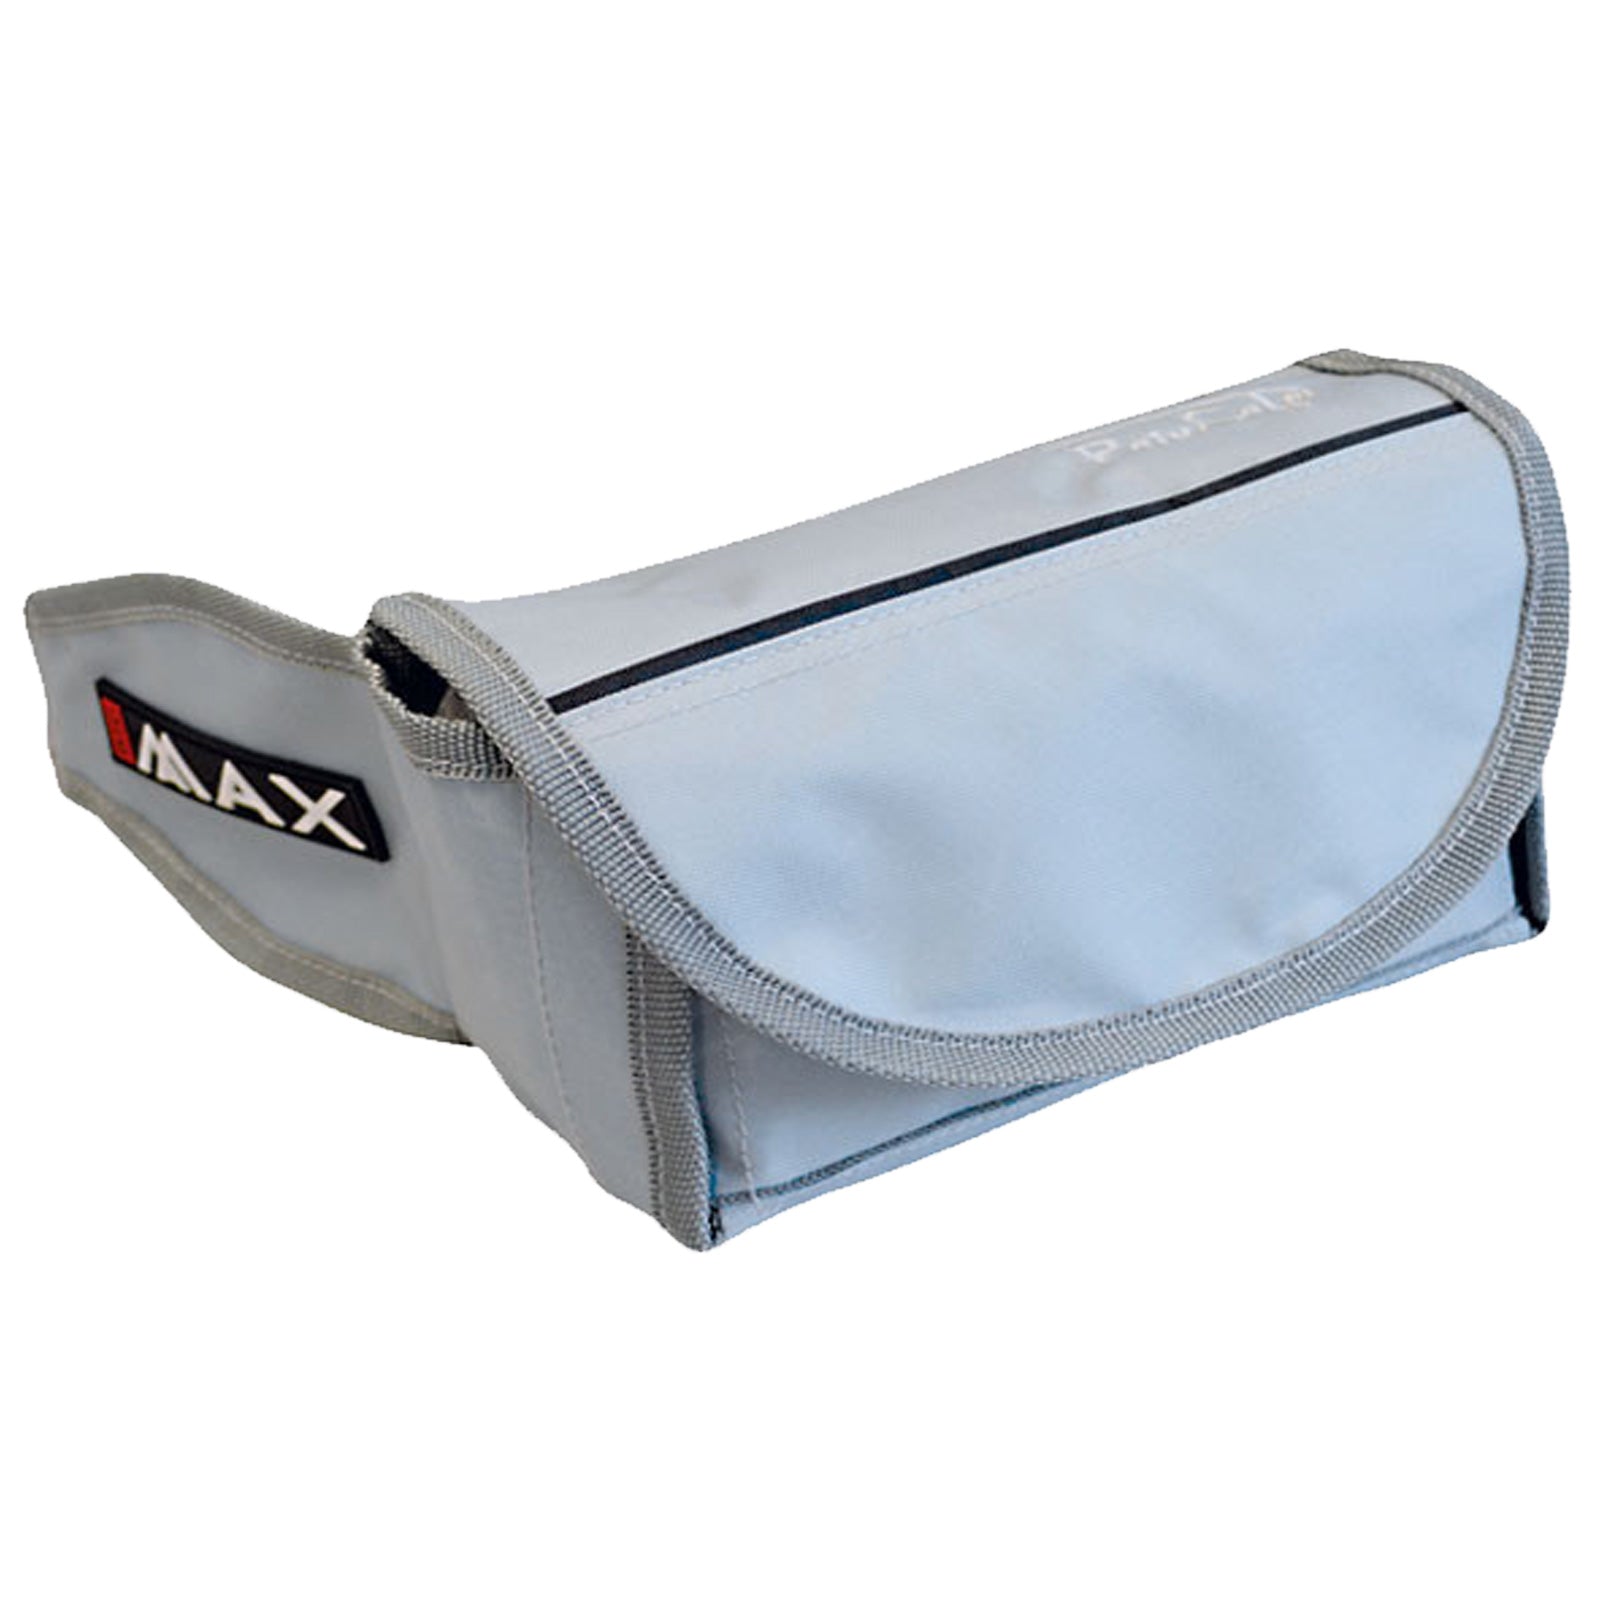 Big Max Rain Safe Golf Bag Cover